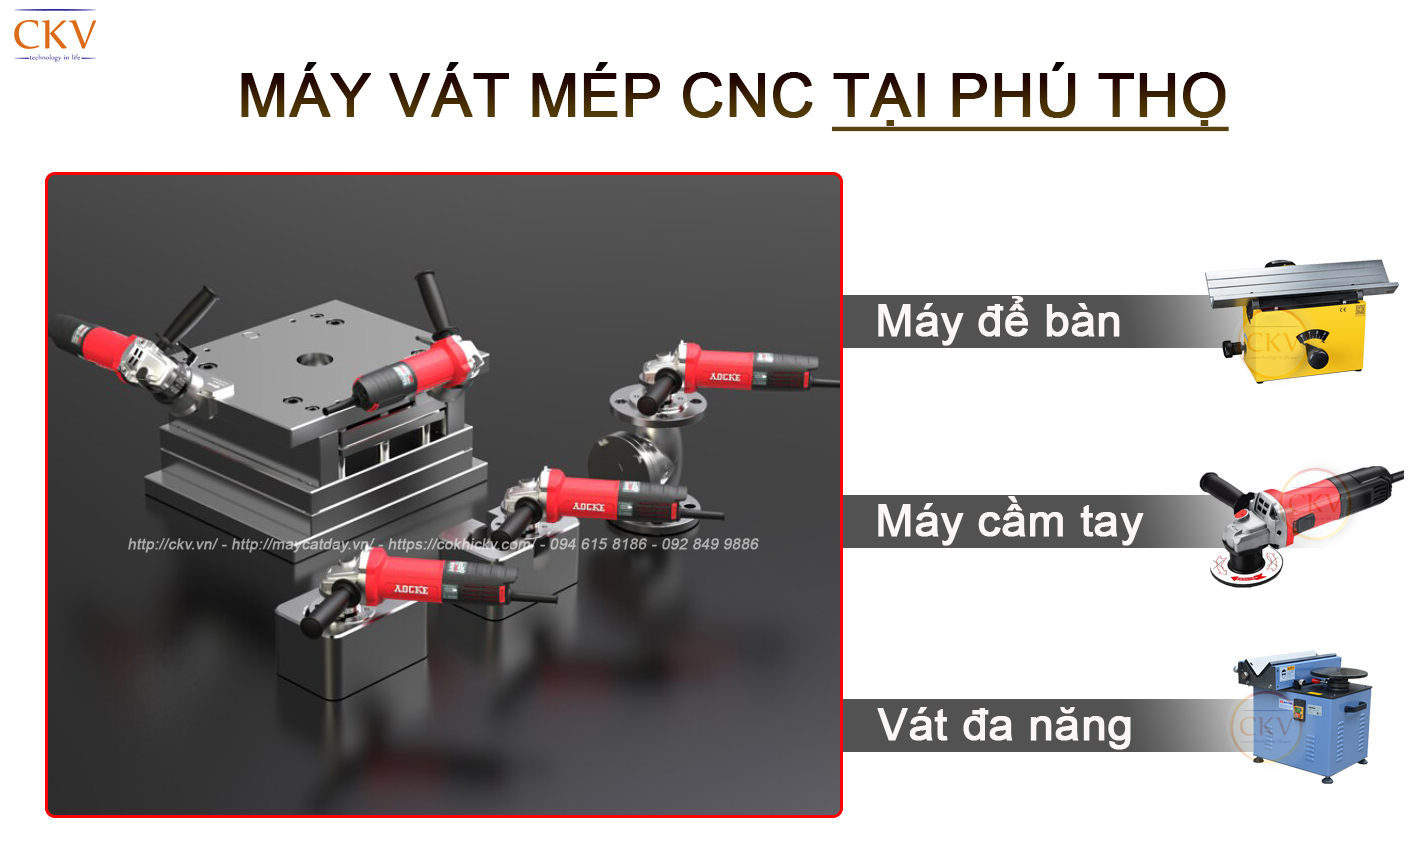 Đại lí máy vát mép CNC tại Phú Thọ miễn phí giao hàng tận nơi